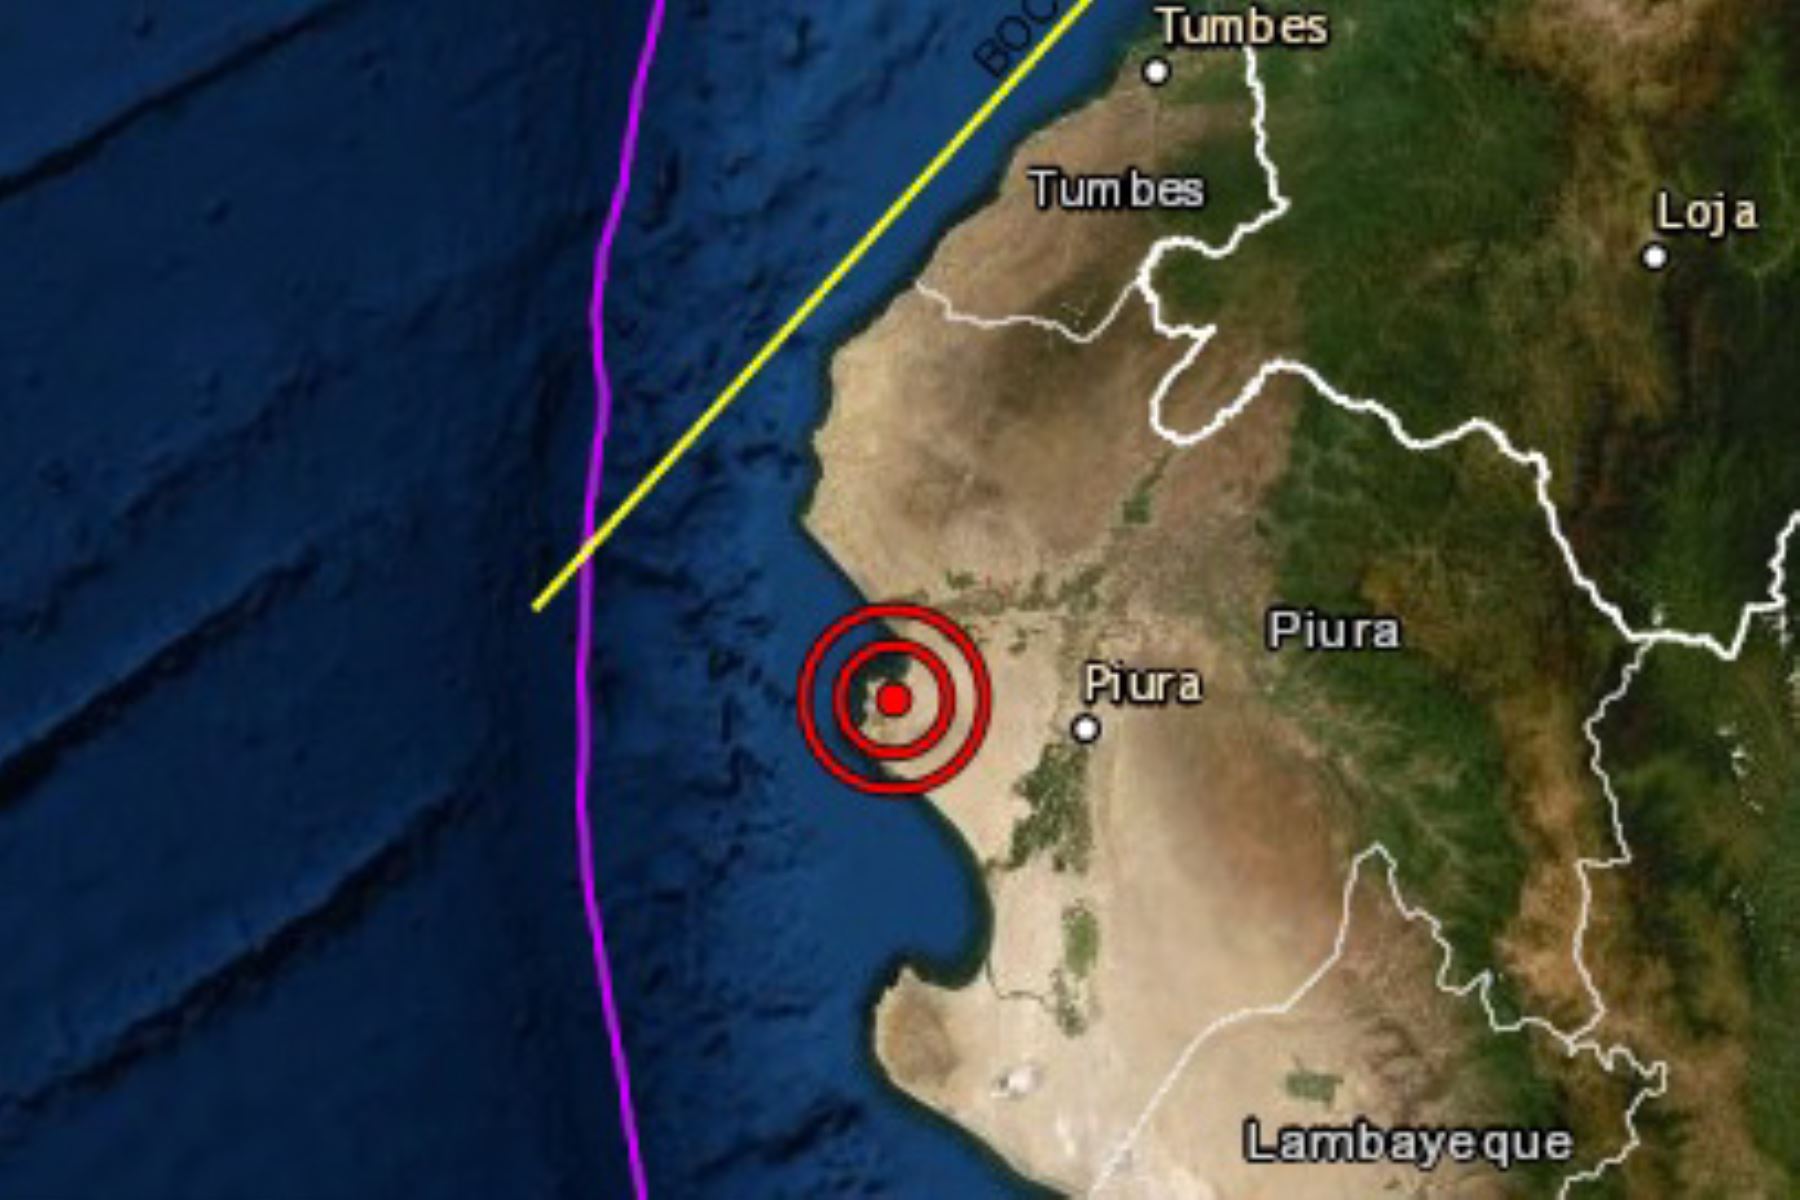 Un sismo de magnitud 3.5 se registró hoy en el departamento de Piura, informó el Instituto Geofísico del Perú (IGP).